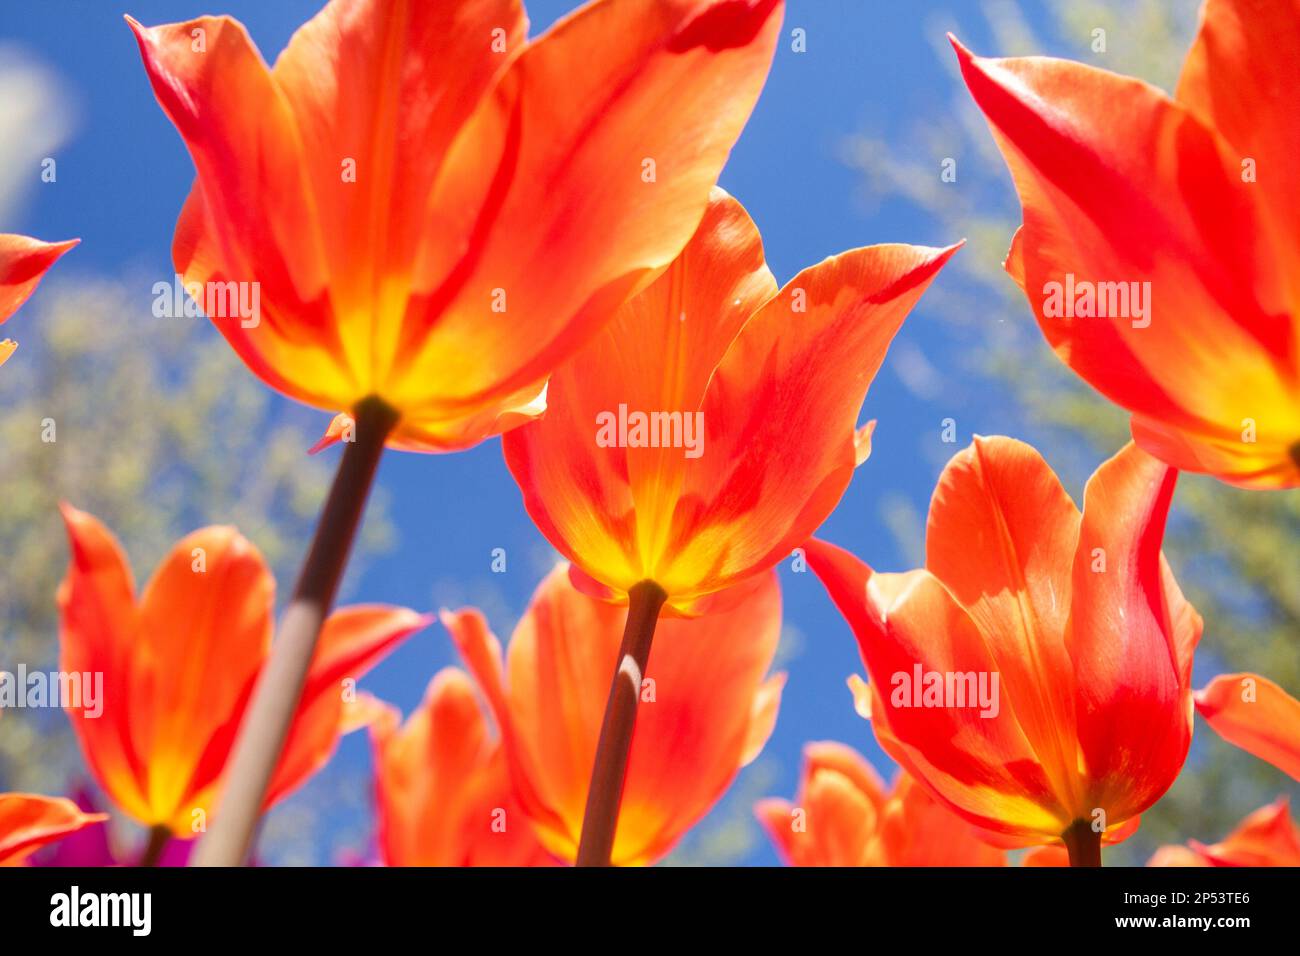 Kräftige orangefarbene Tulpen (Tulipa) vor einem leuchtend blauen Himmel, aus einer anderen Perspektive gesehen, mit Blick unter den Blumen. Stockfoto